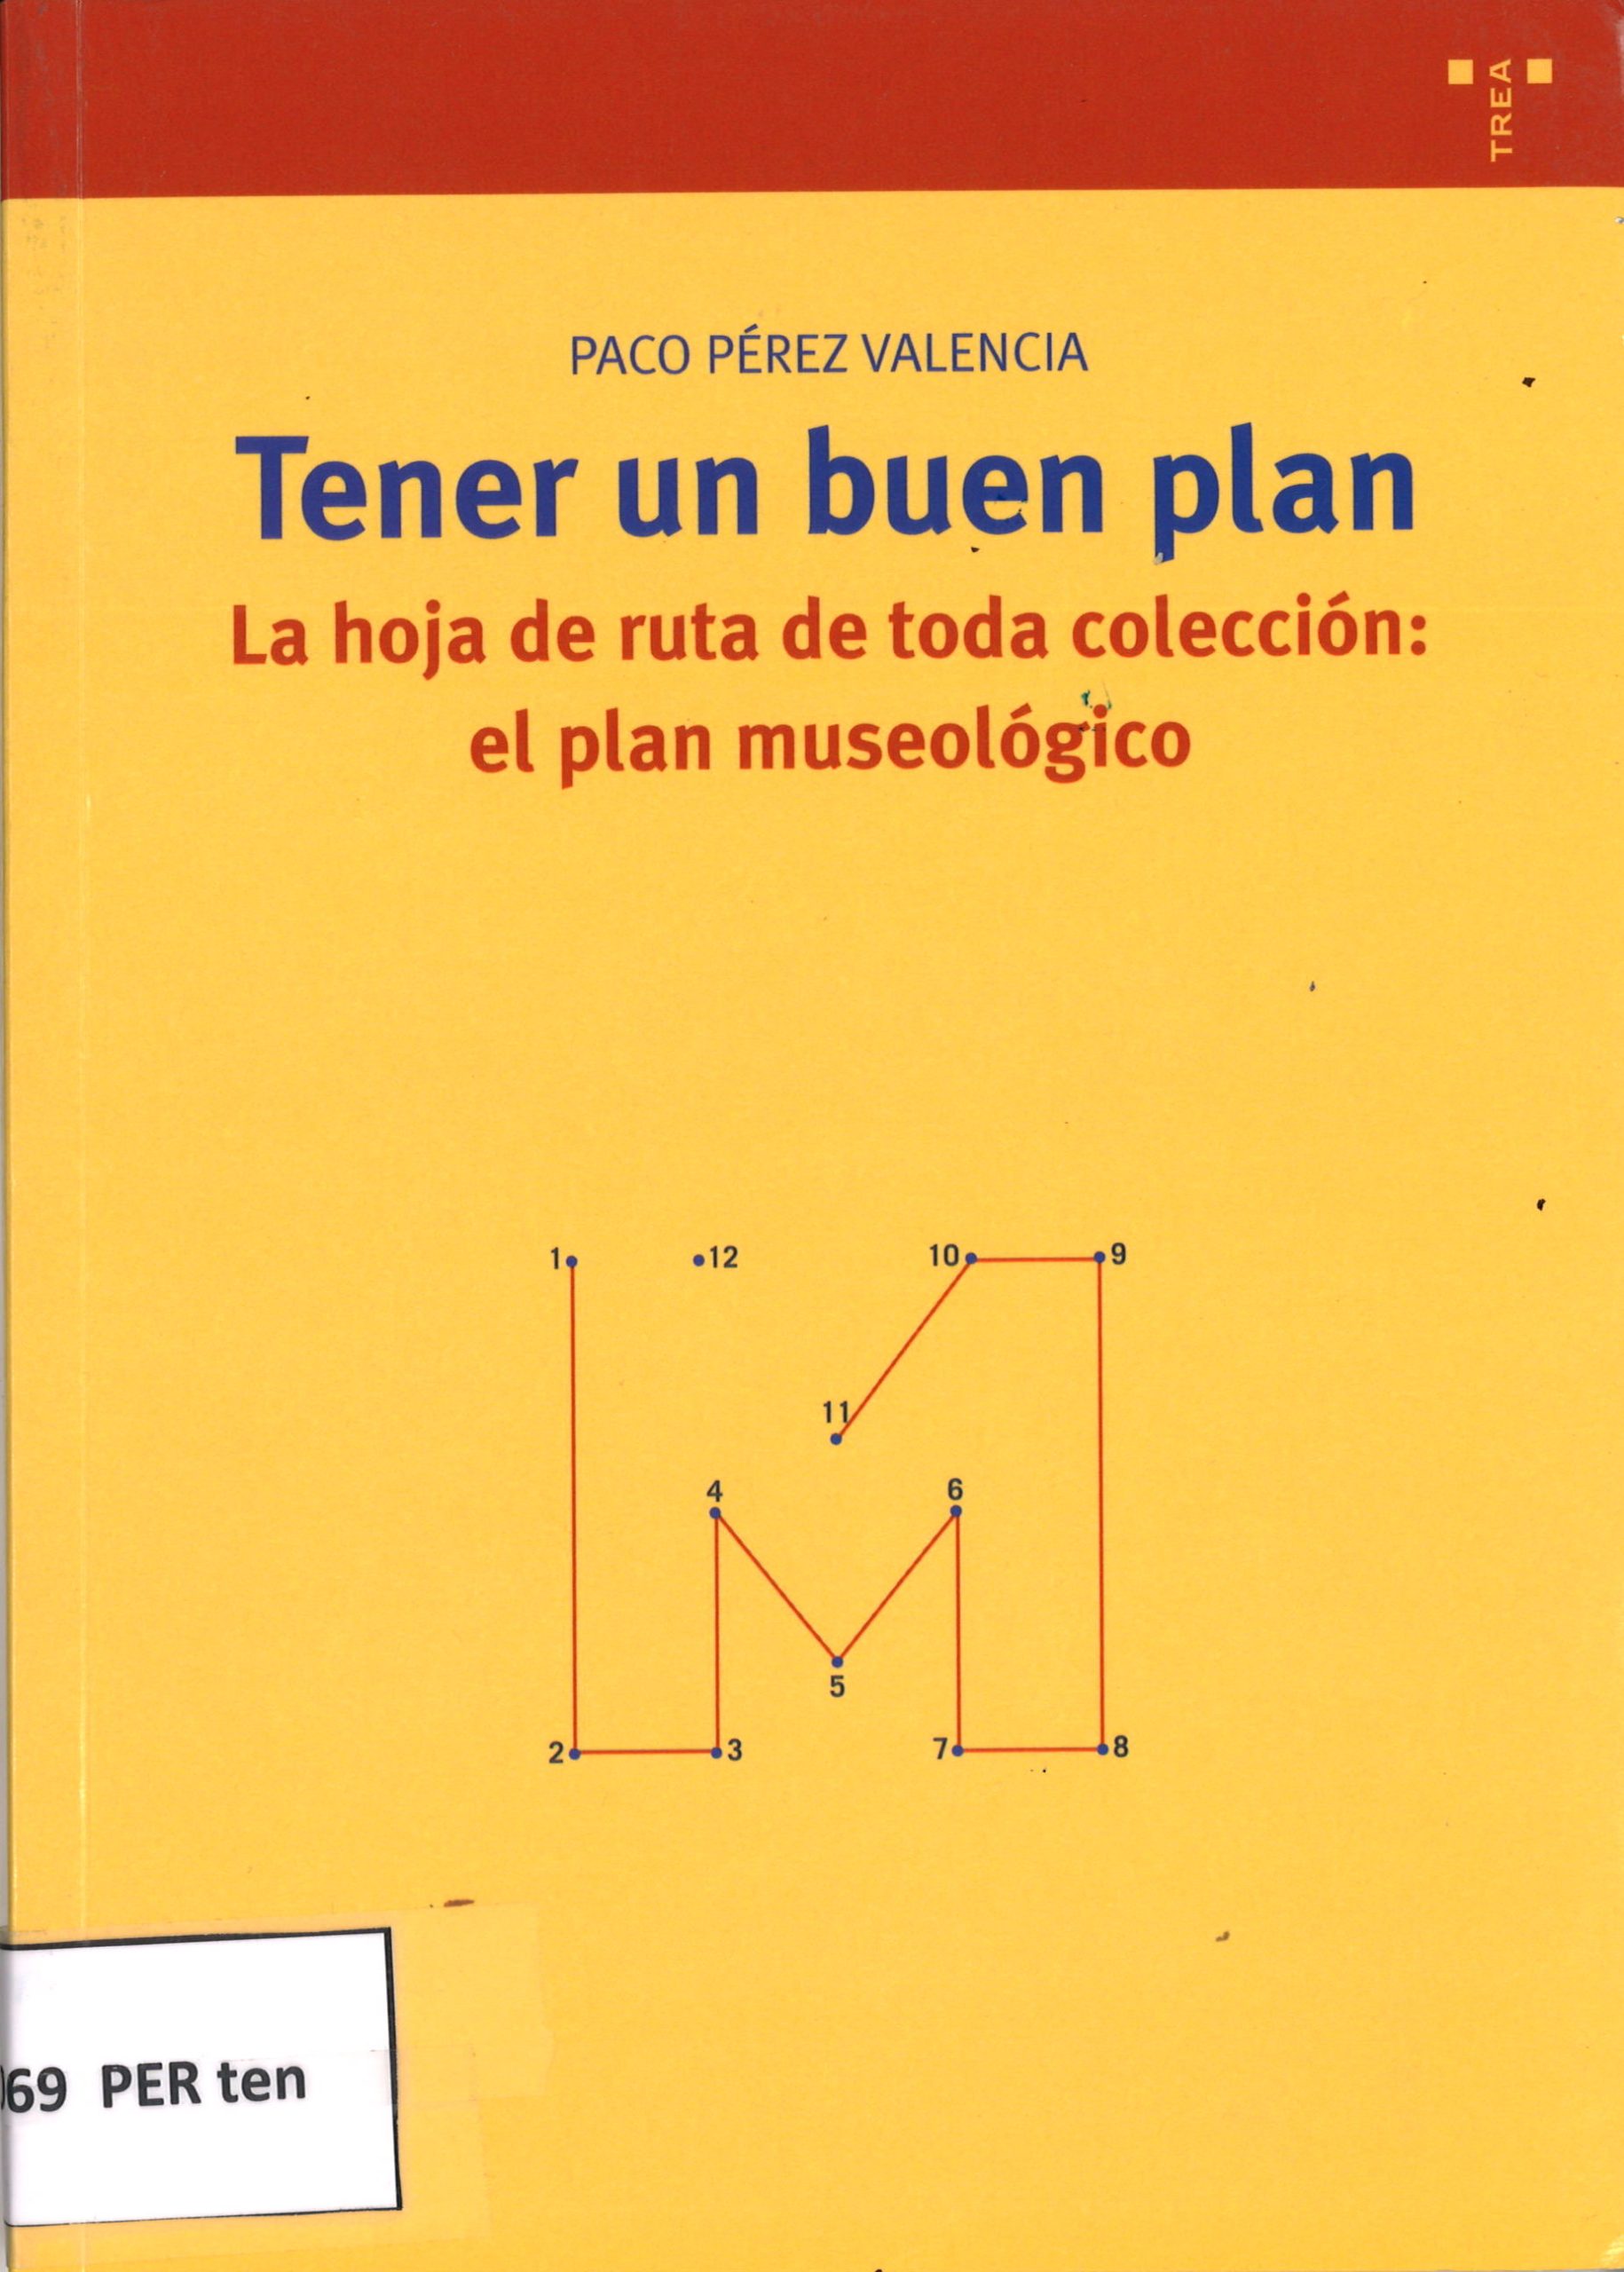 Tener un buen plan. La hoja de ruta de toda colección: el plan museológico - Paco Pérez Valencia-image